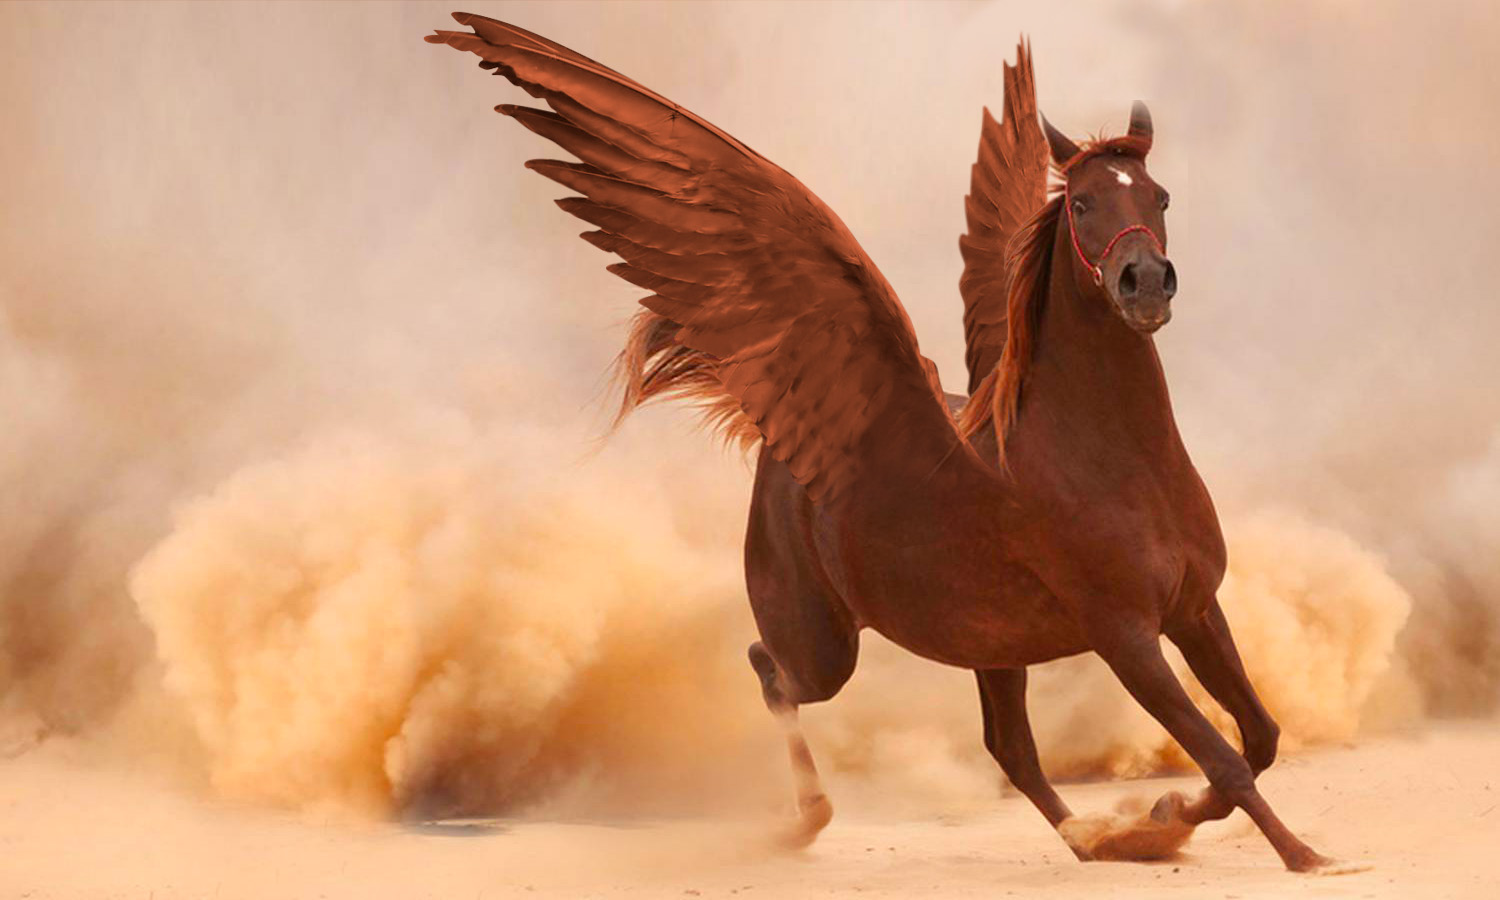 Edición en Photoshop: aquí está el resultado final, ¡tenemos un bonito caballo alado!